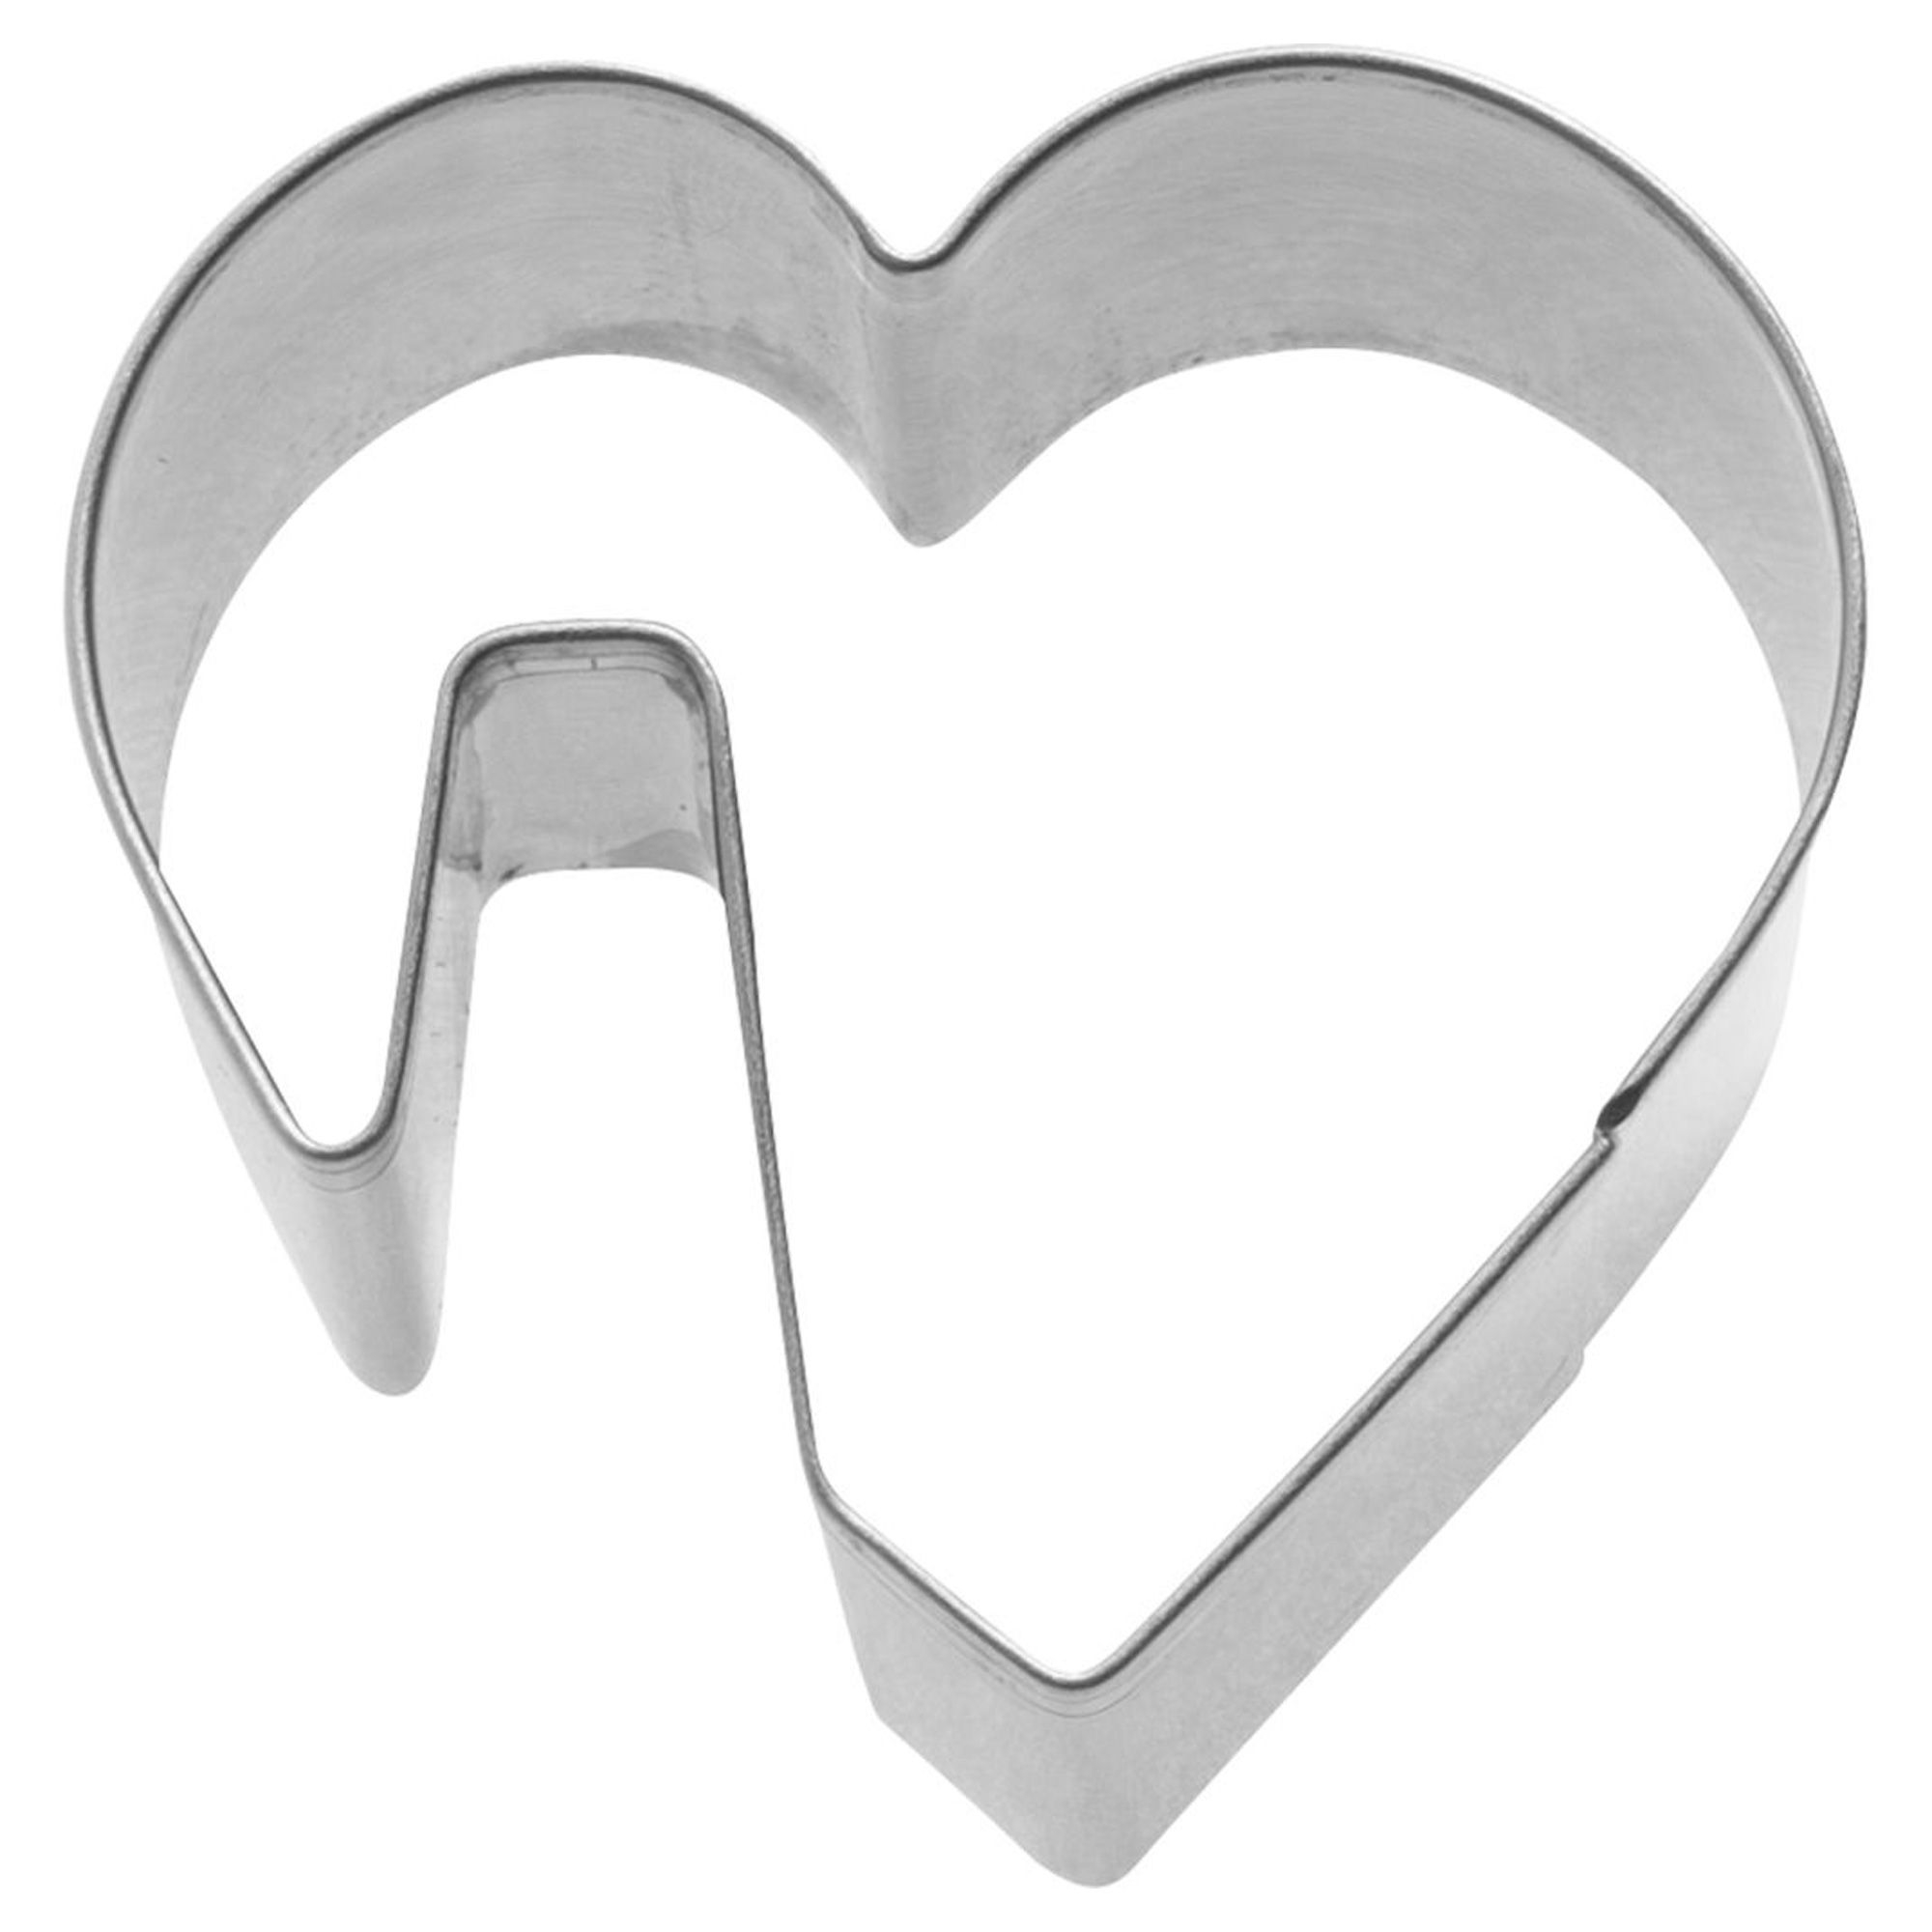 Westmark - Tassenkeks-Ausstechform »Herz«, 5 cm, lose mit EAN